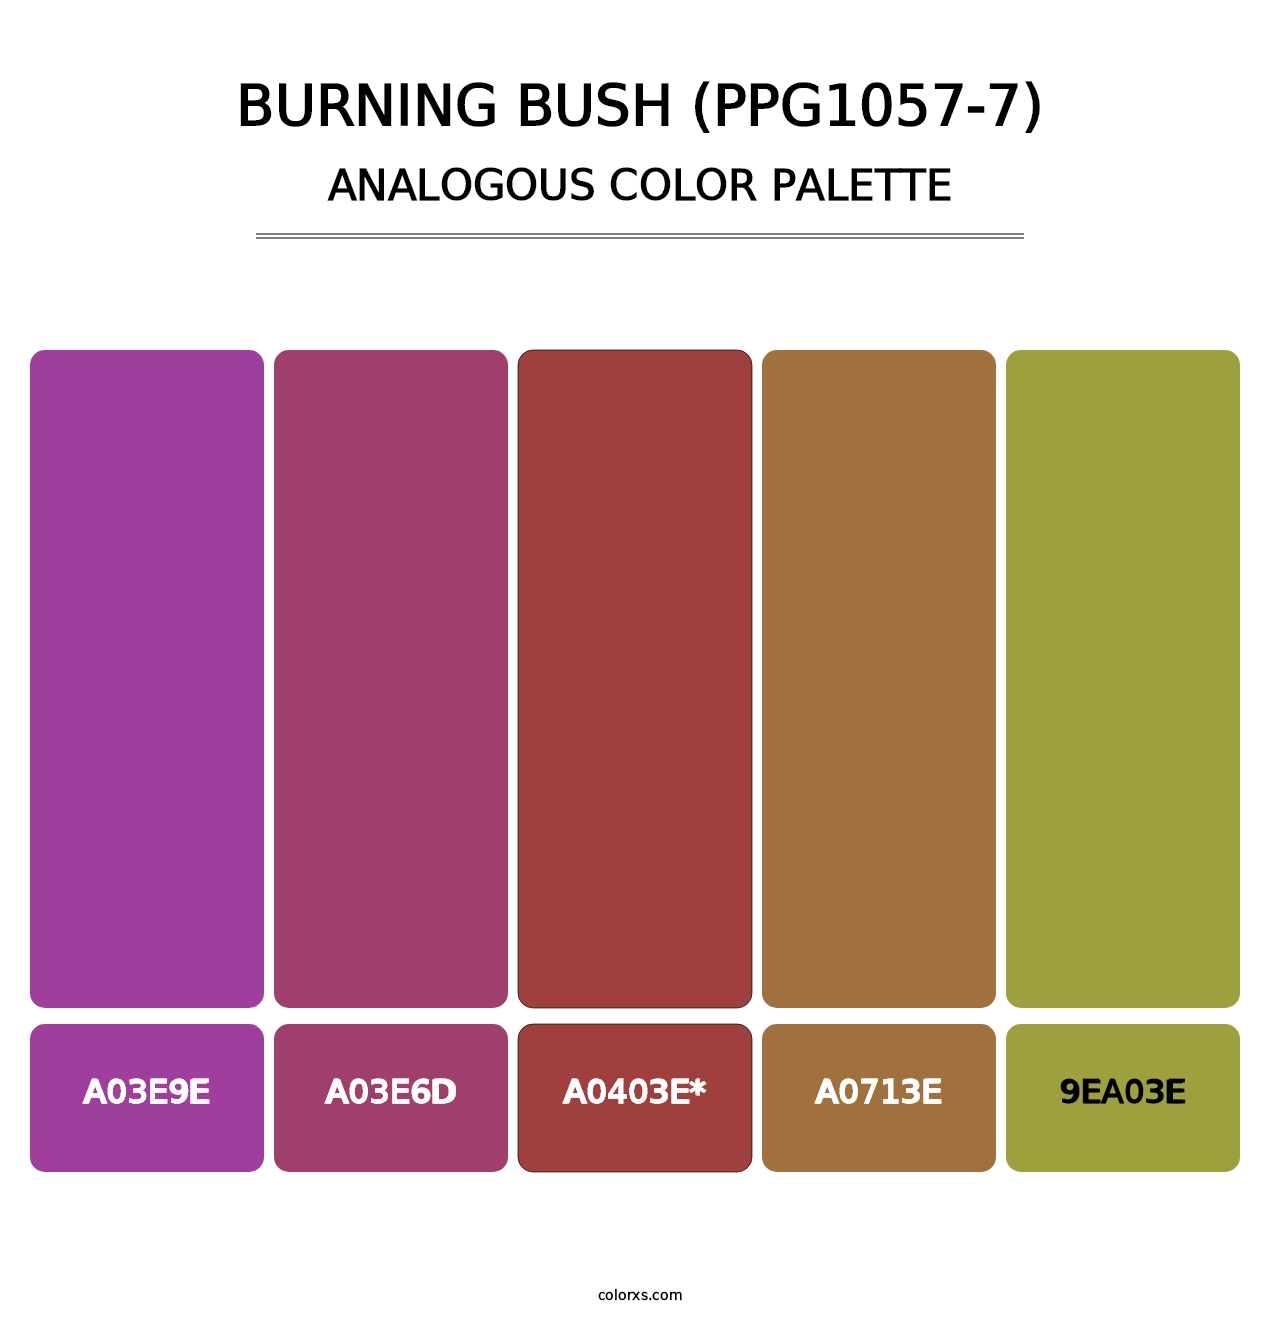 Burning Bush (PPG1057-7) - Analogous Color Palette